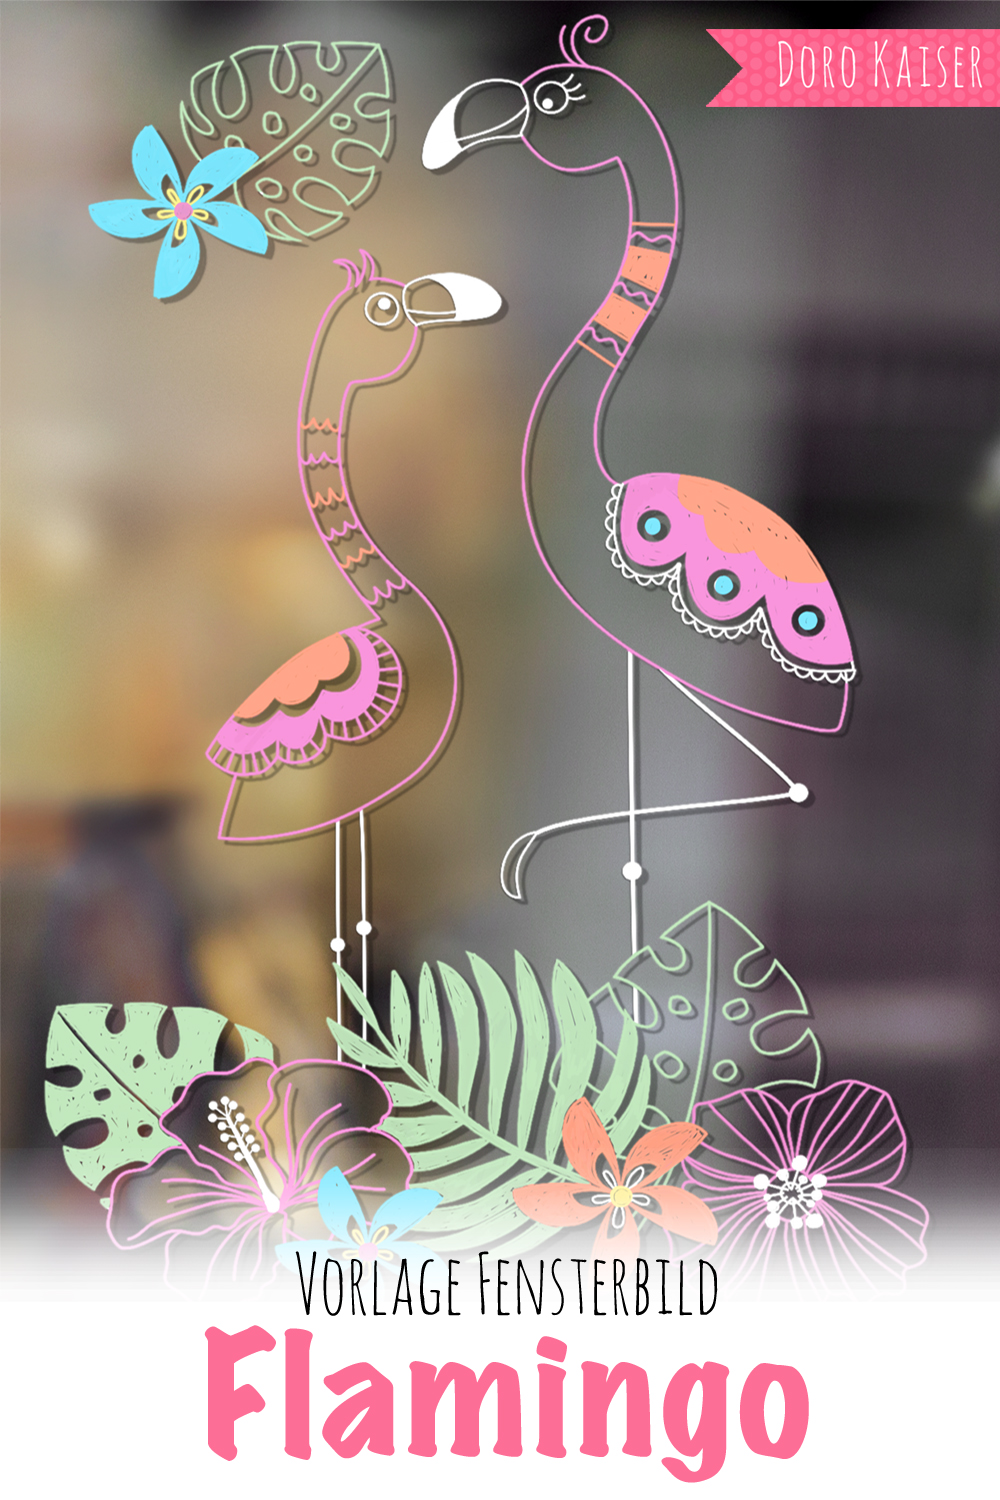 freebie vorlage für ein fensterbild mit flamingo  doro